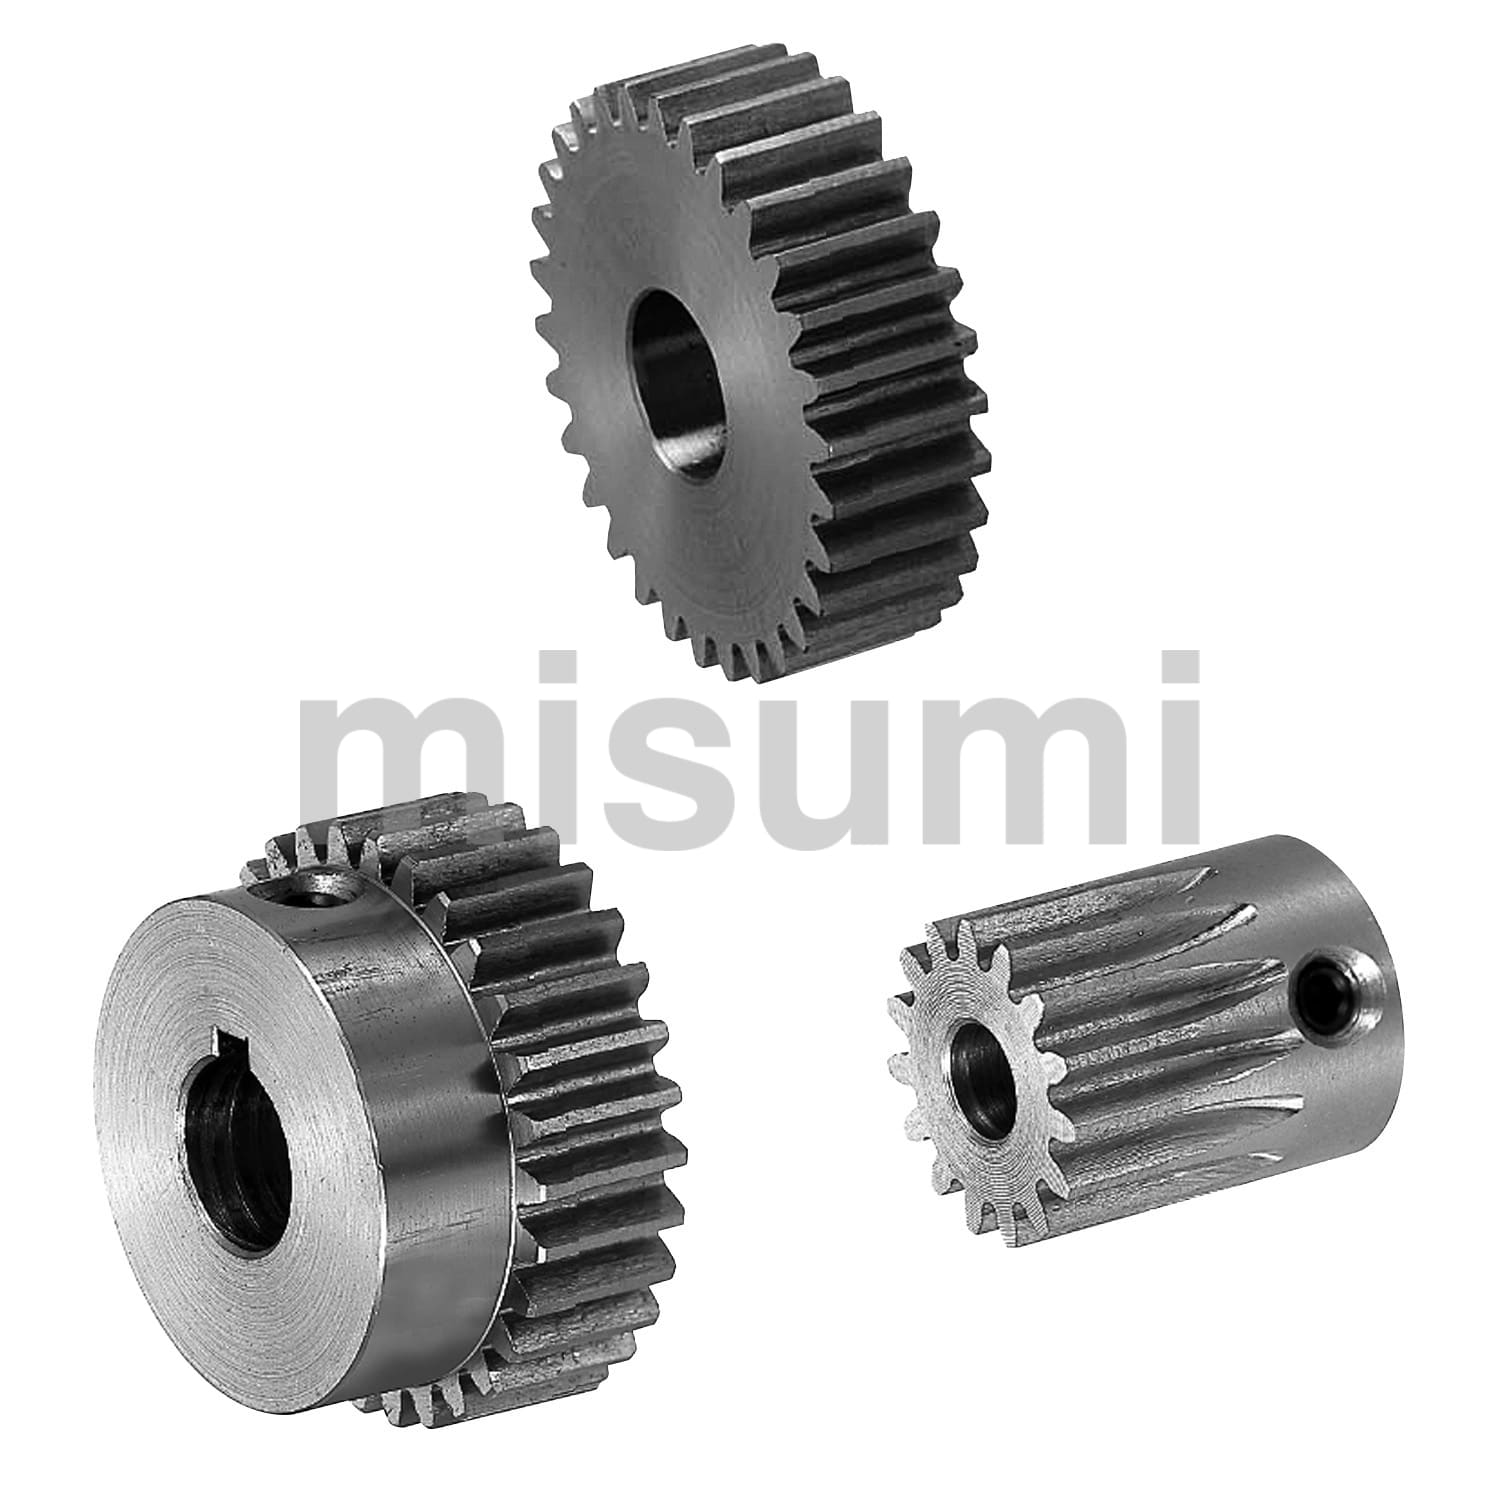 平歯車 圧力角20° モジュール1.0 軸穴加工タイプ | ミスミ | MISUMI